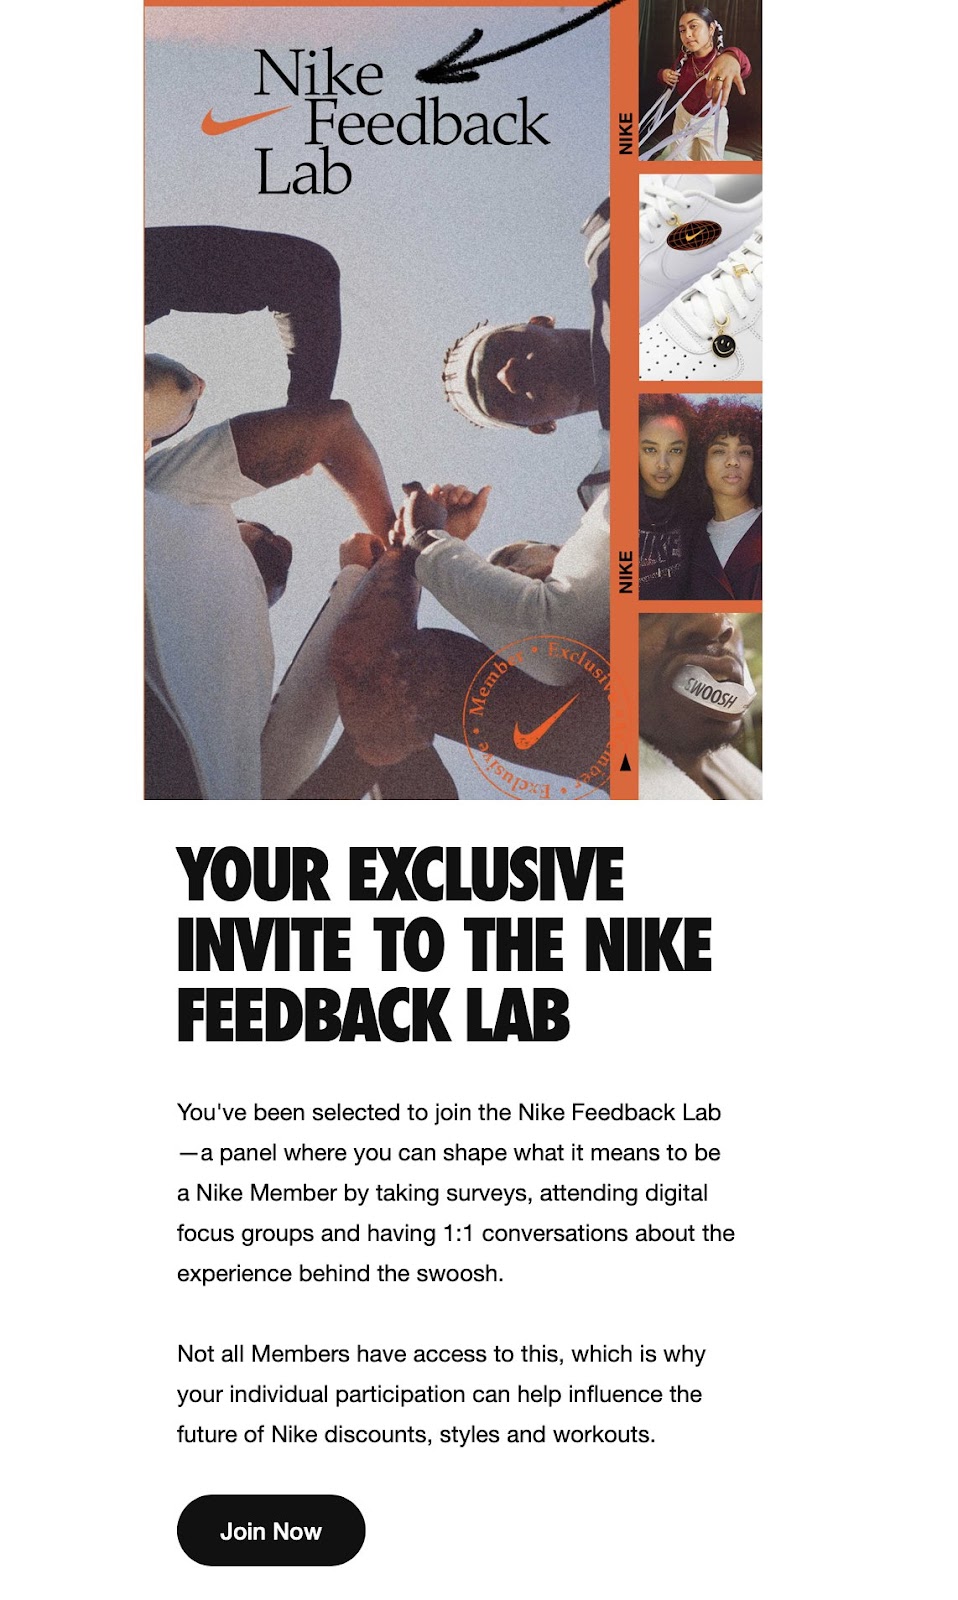 лаборатория обратной связи Nike